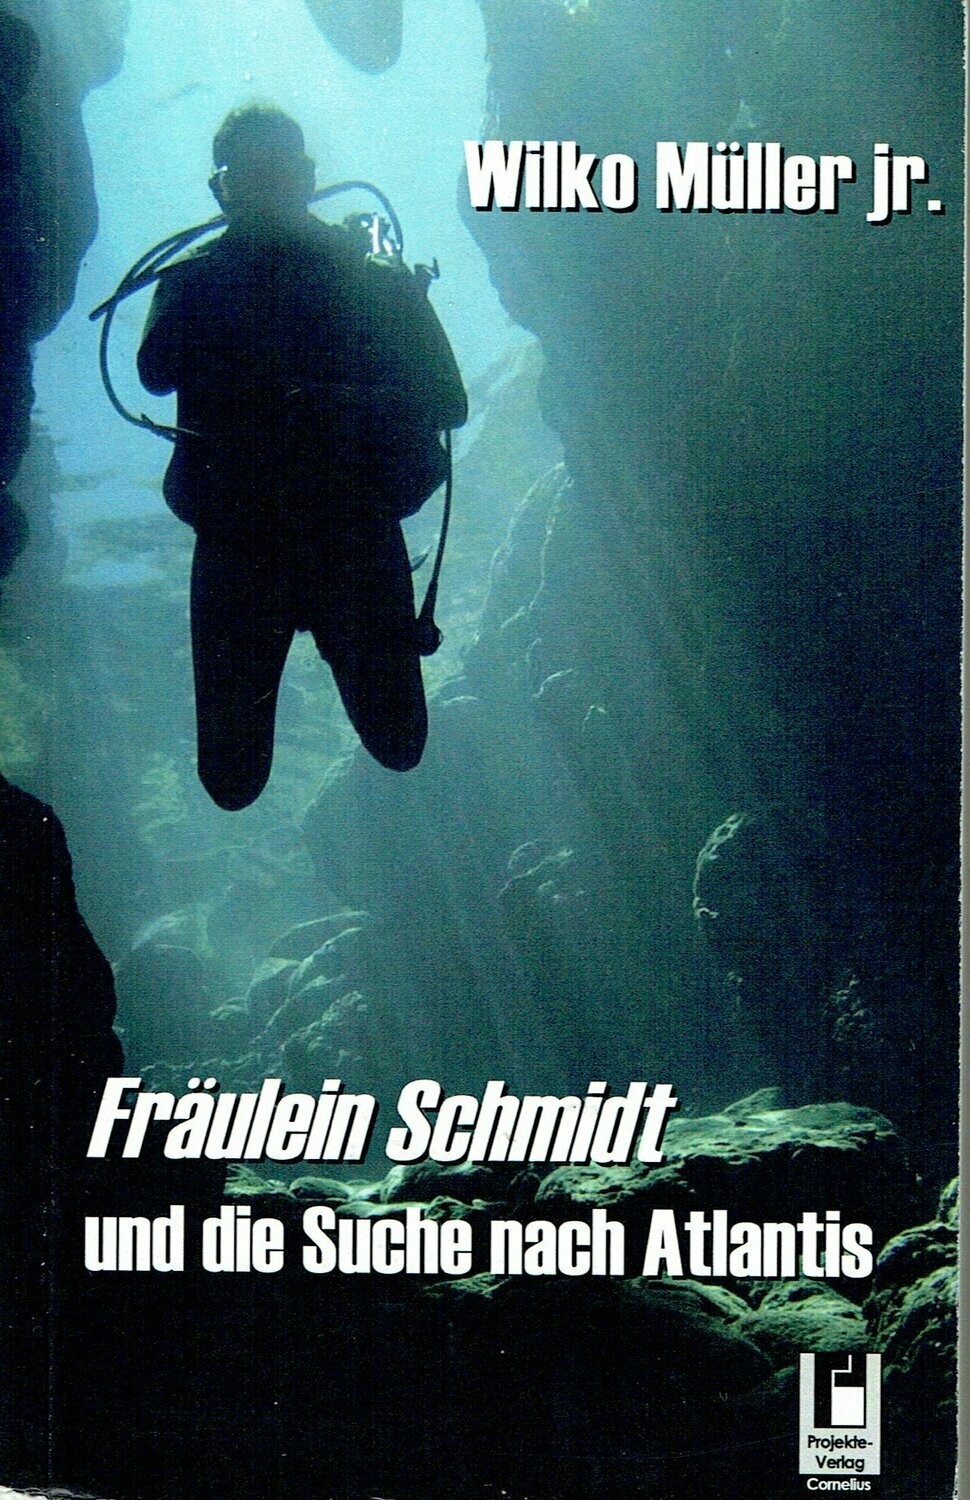 Fräulein Schmidt Autor Wilko Müller